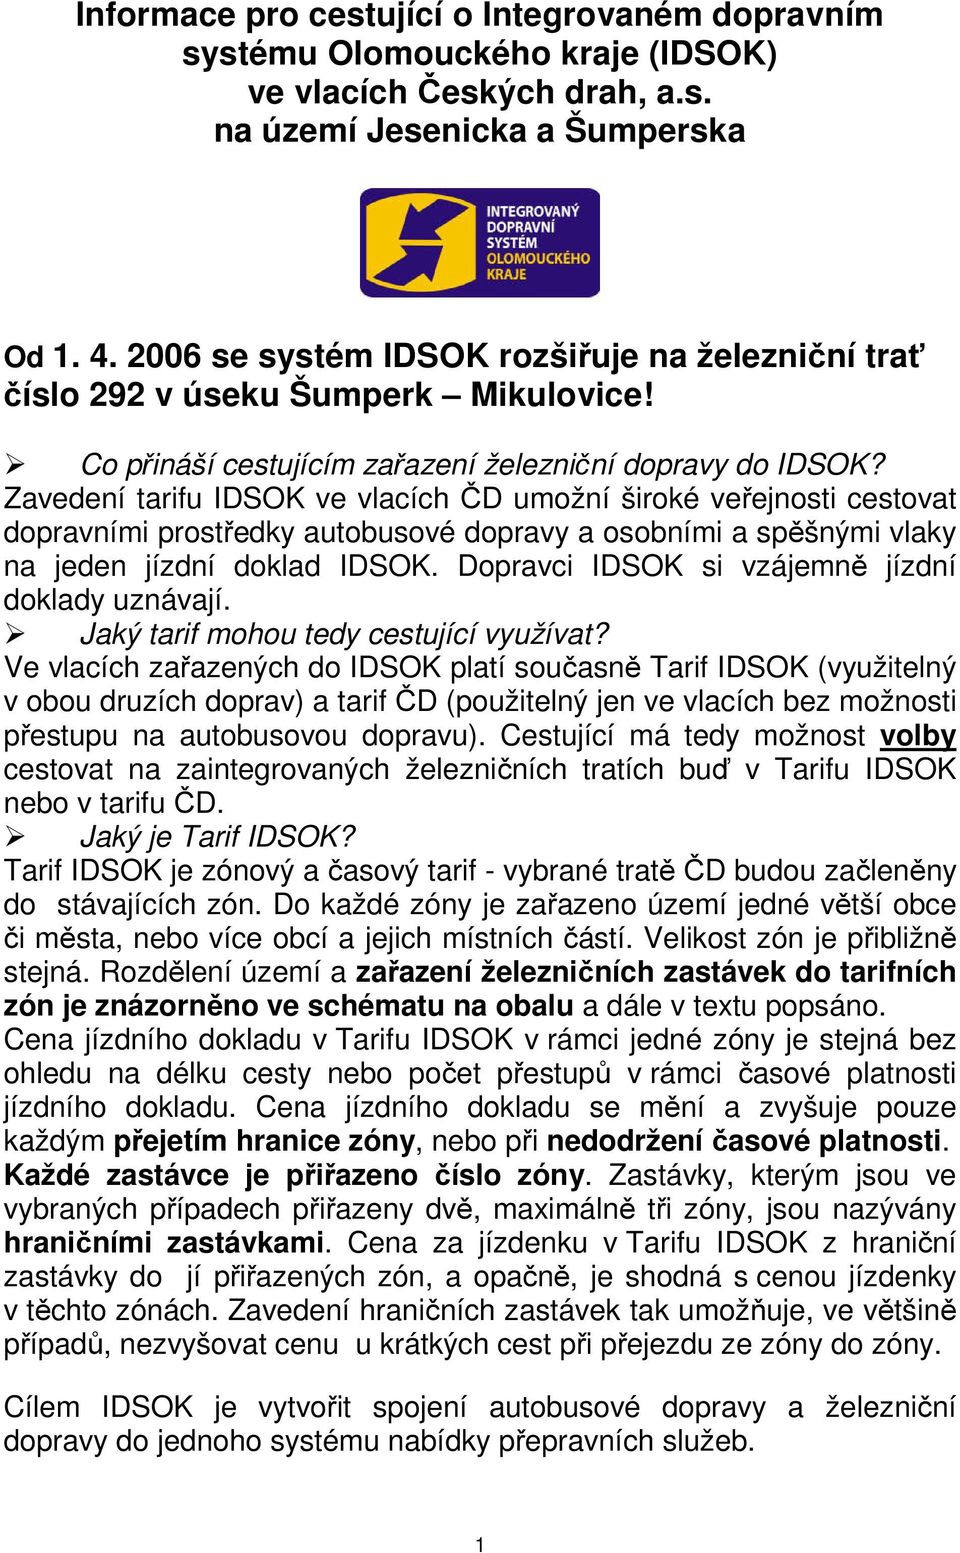 Zavedení tarifu IDSOK ve vlacích ČD umožní široké veřejnosti cestovat dopravními prostředky autobusové dopravy a osobními a spěšnými vlaky na jeden jízdní doklad IDSOK.